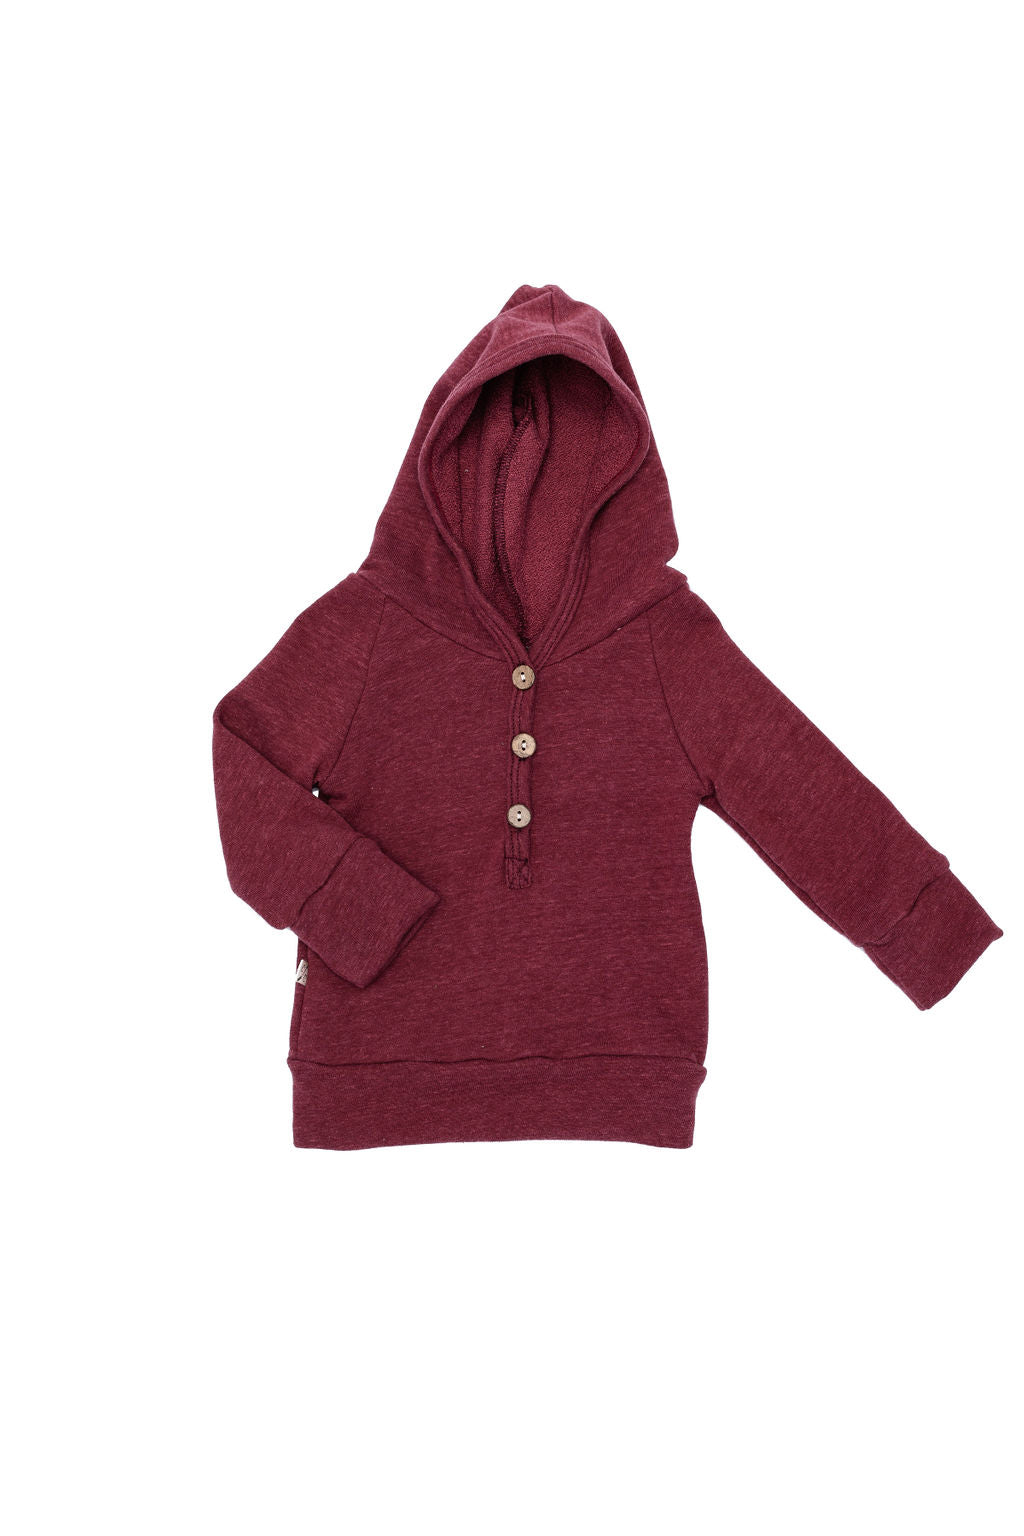 henley hoodie - maroon